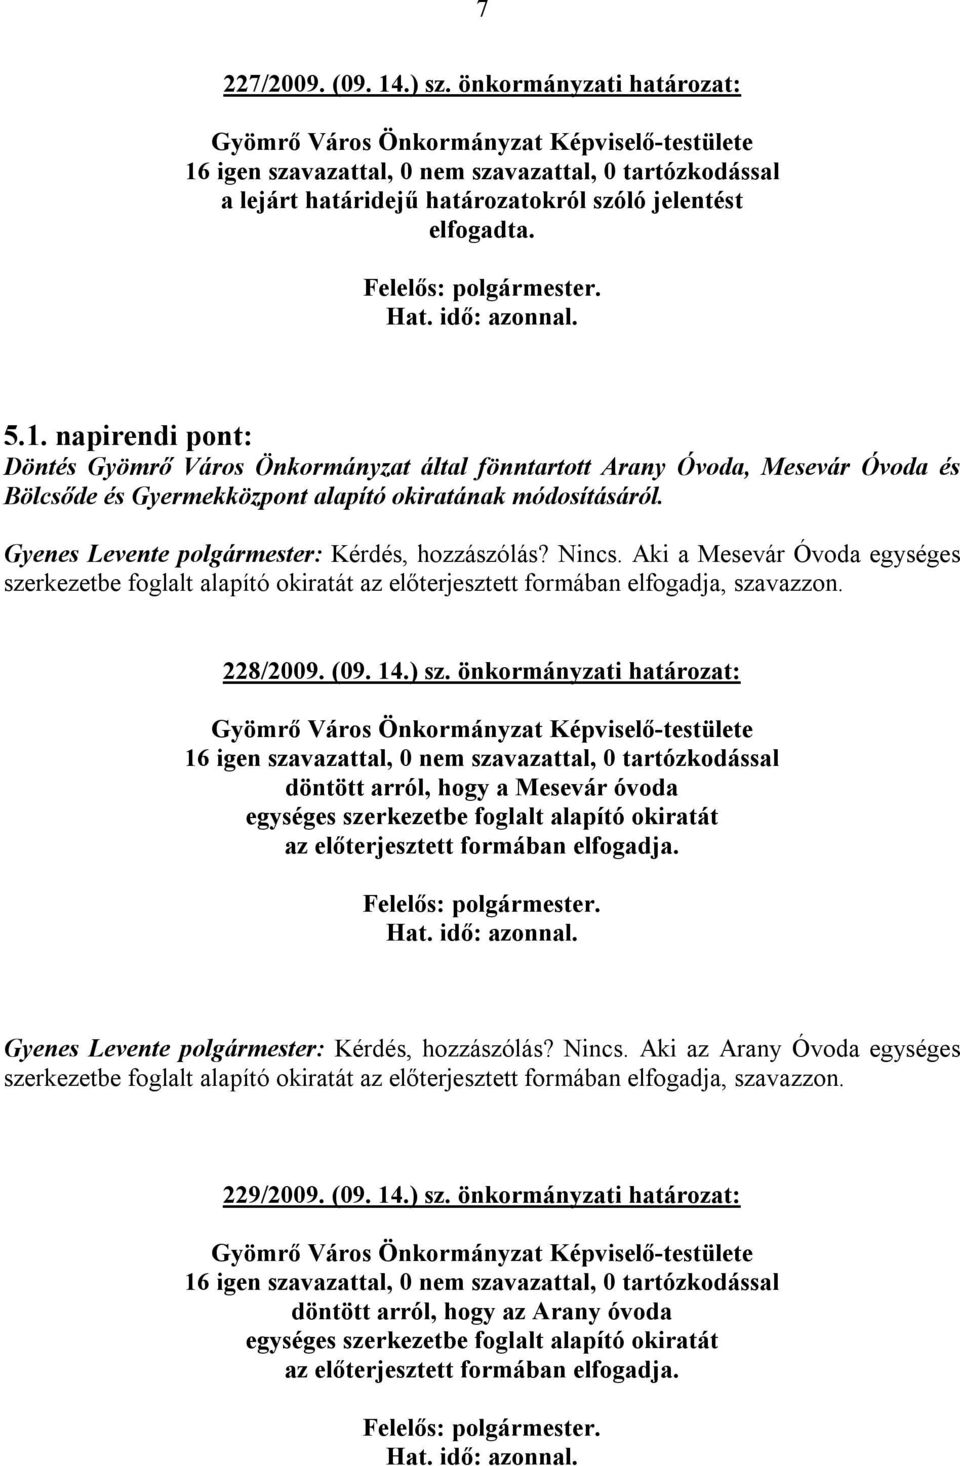 önkormányzati határozat: döntött arról, hogy a Mesevár óvoda egységes szerkezetbe foglalt alapító okiratát az előterjesztett formában elfogadja. Gyenes Levente polgármester: Kérdés, hozzászólás?